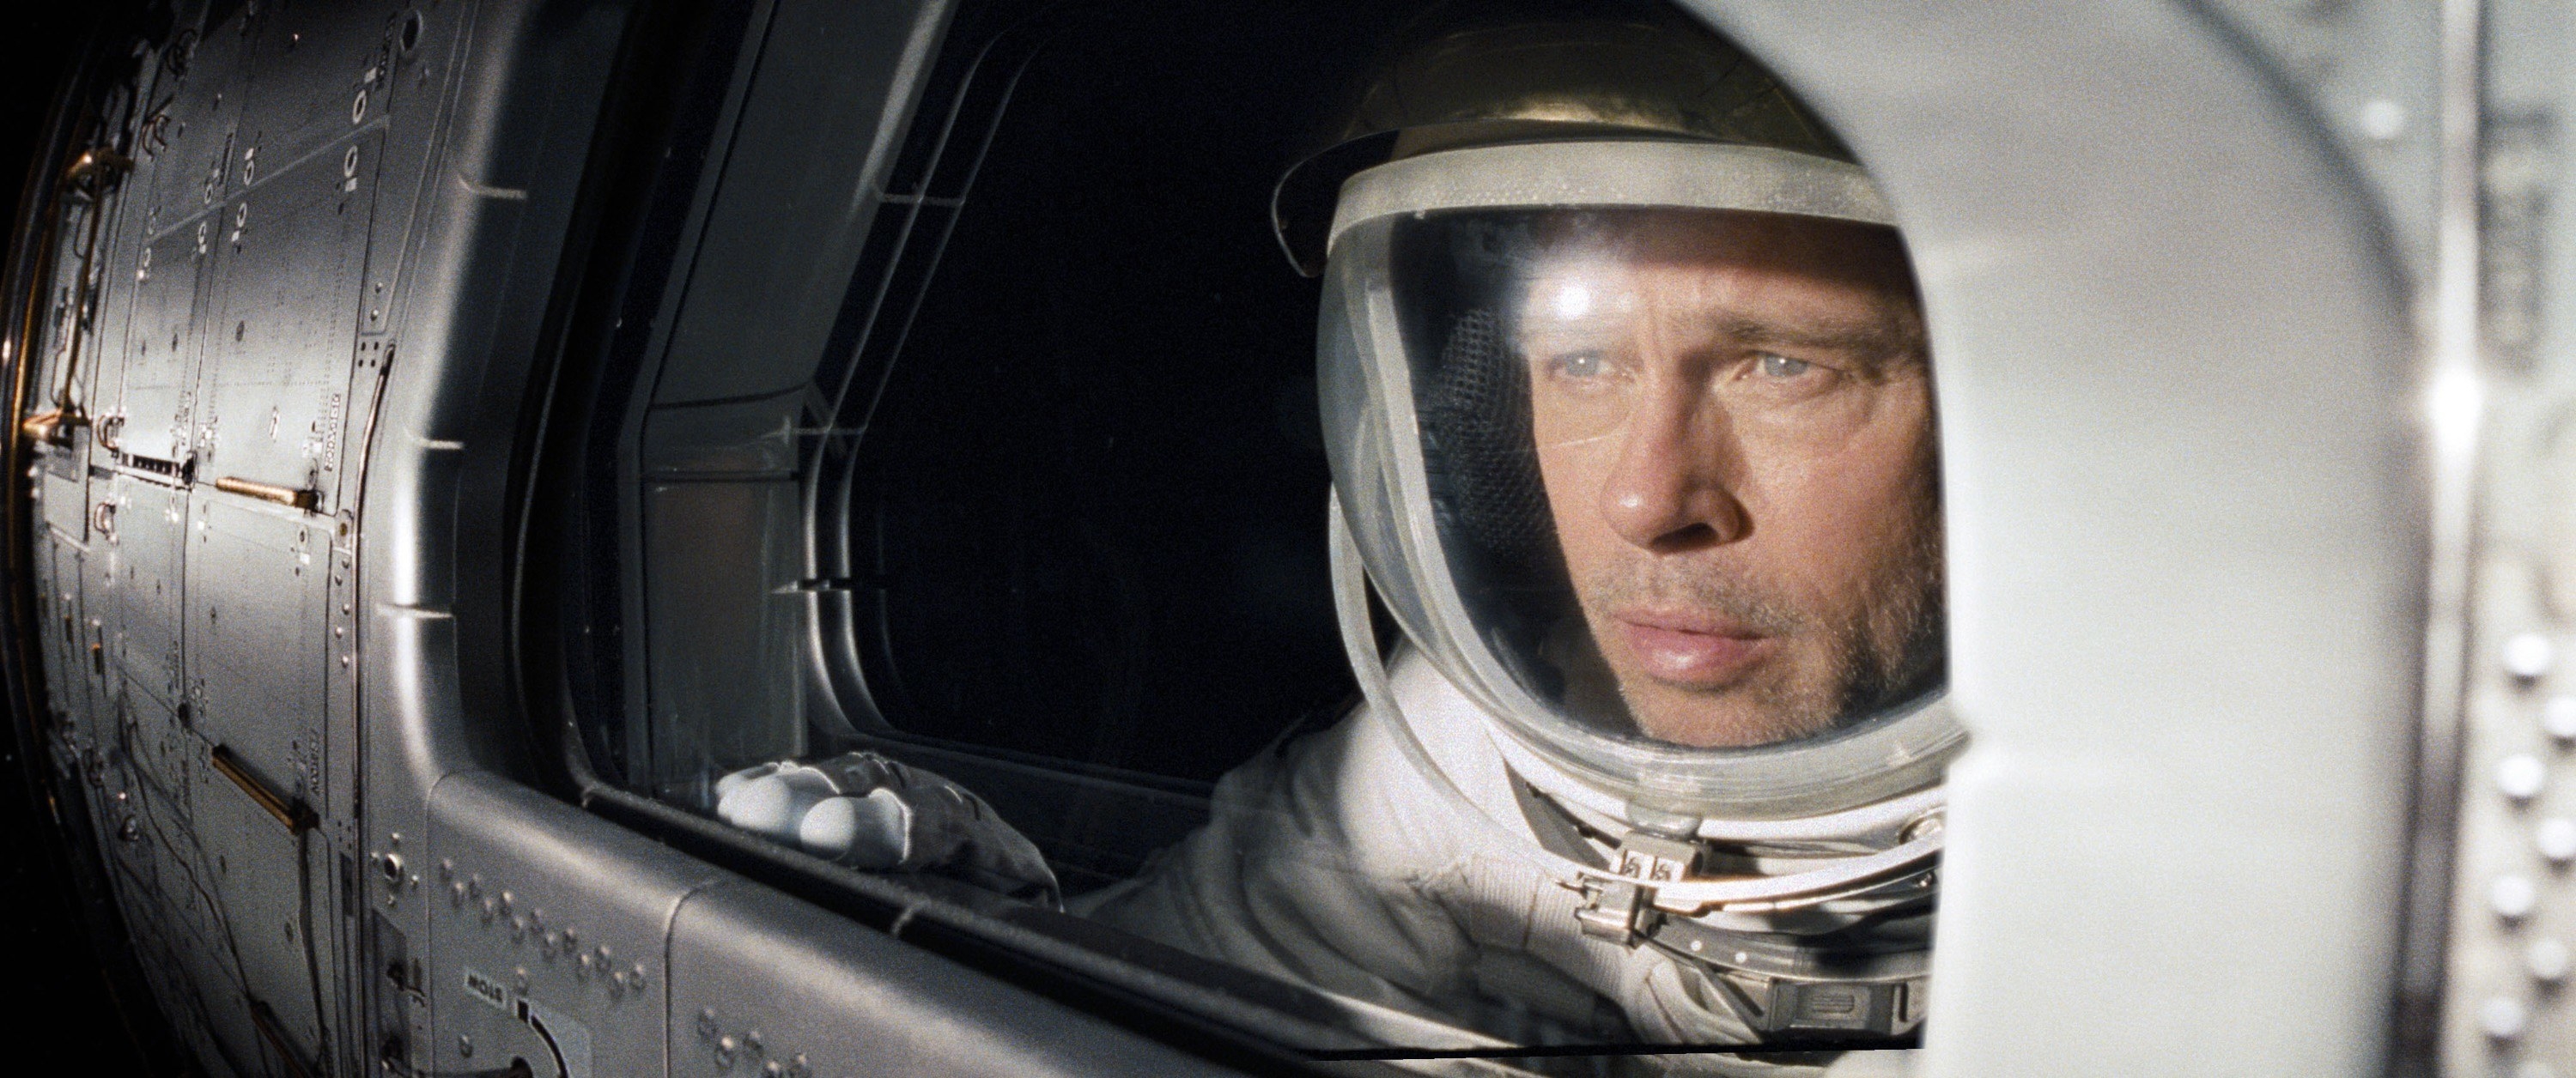 Man in an astronaut uniform in a spaceship